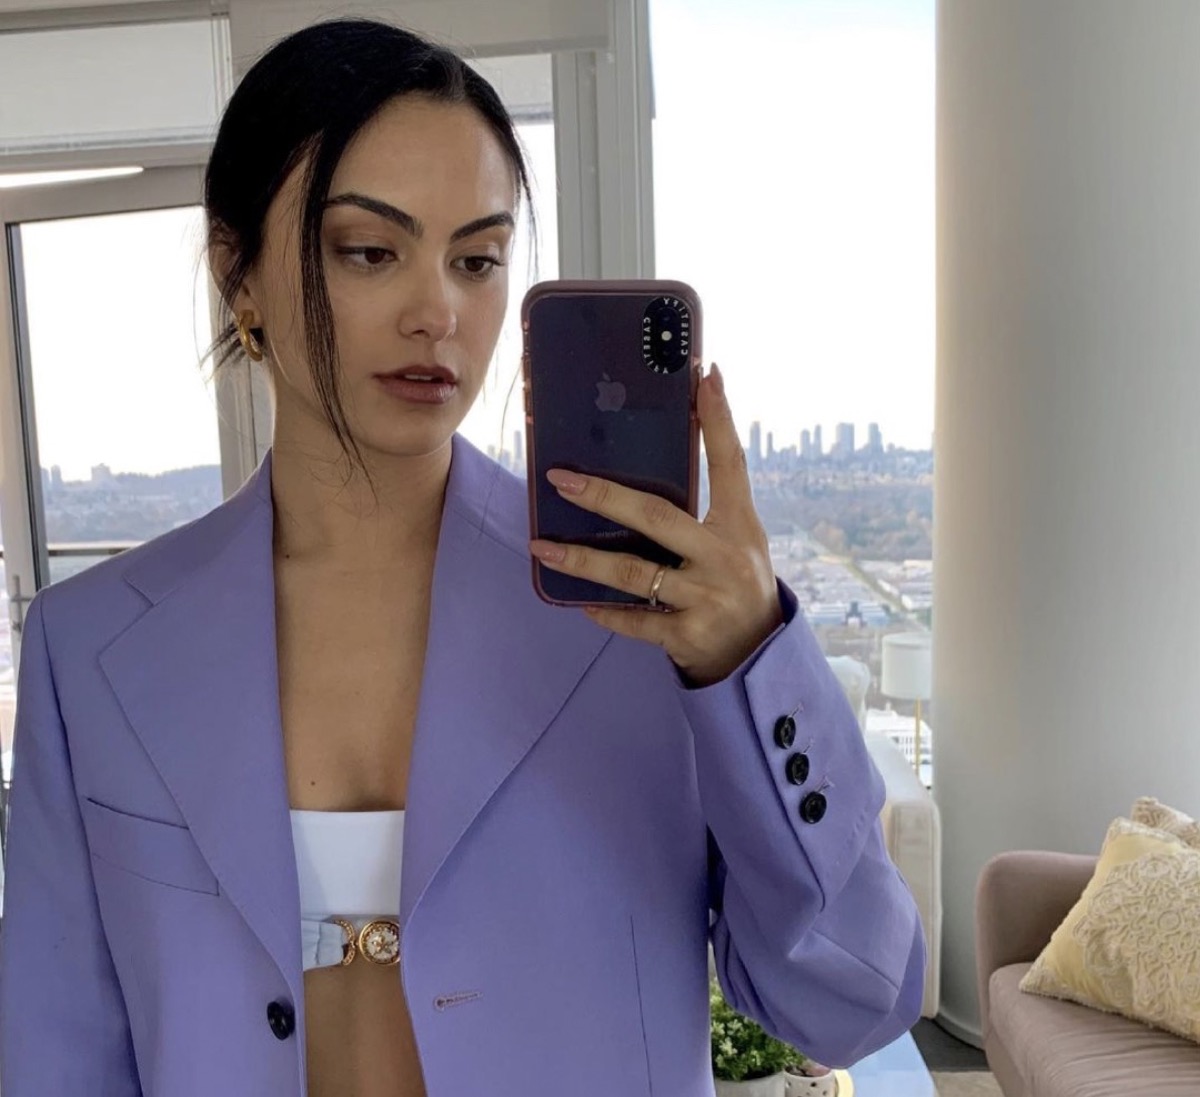 camila mendes taking selfie in purple jacket